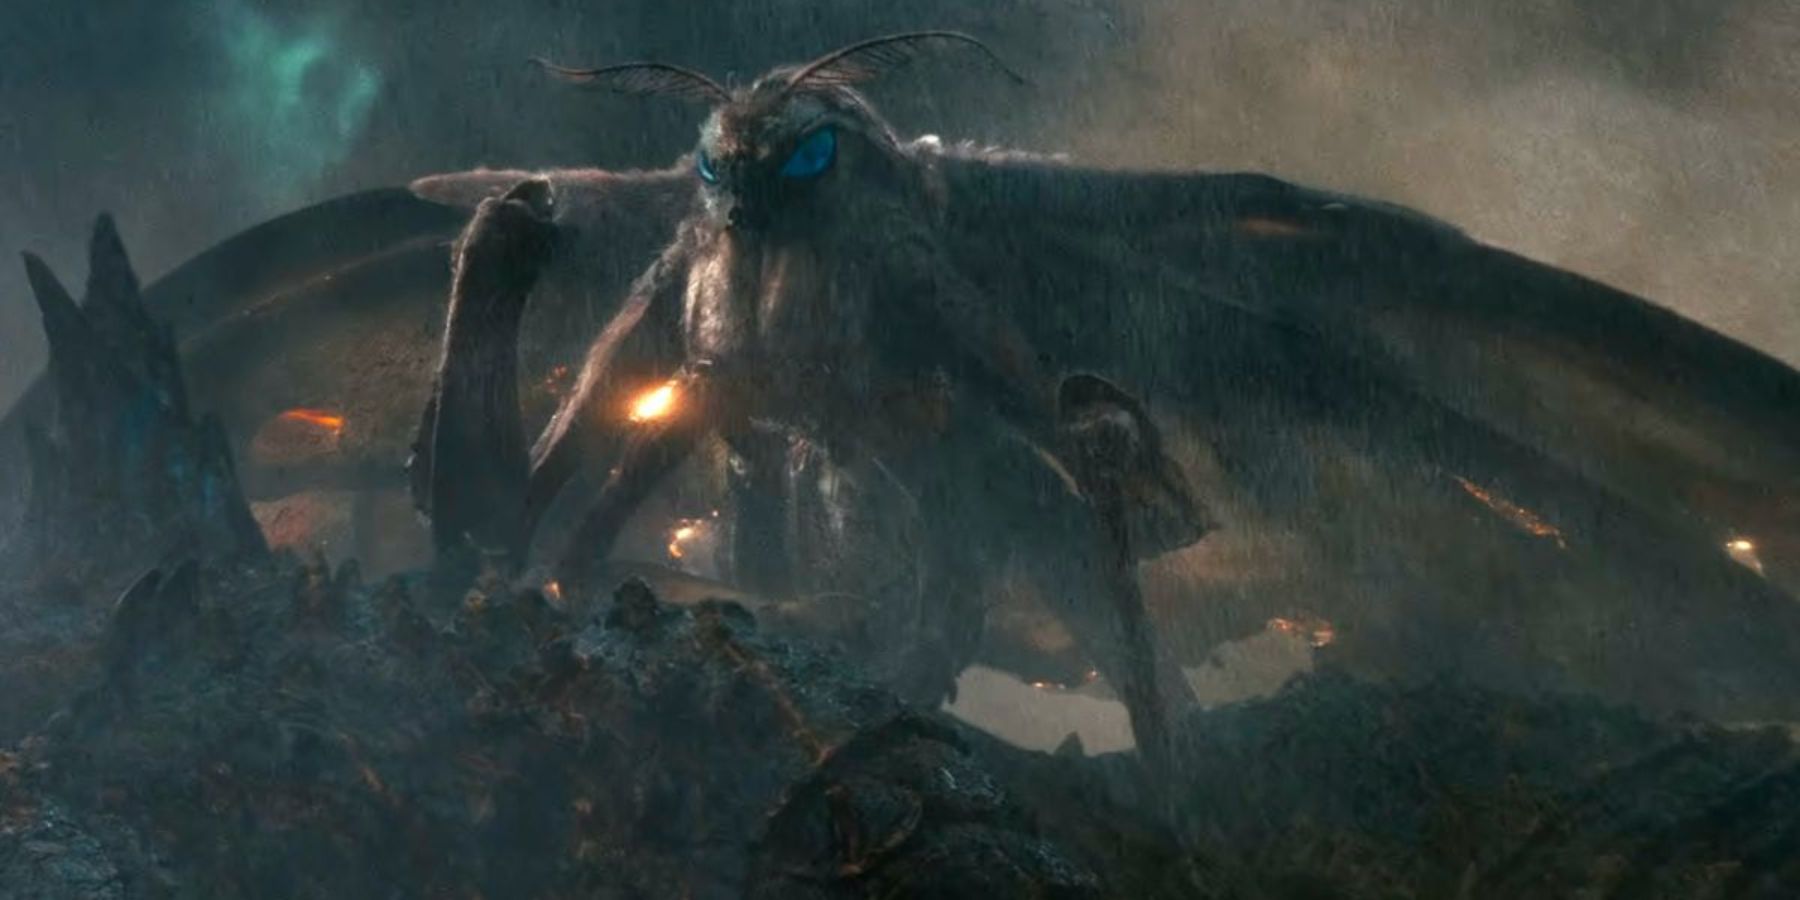 Mothra MonsterVerse Mothra returns in Godzilla x Kong